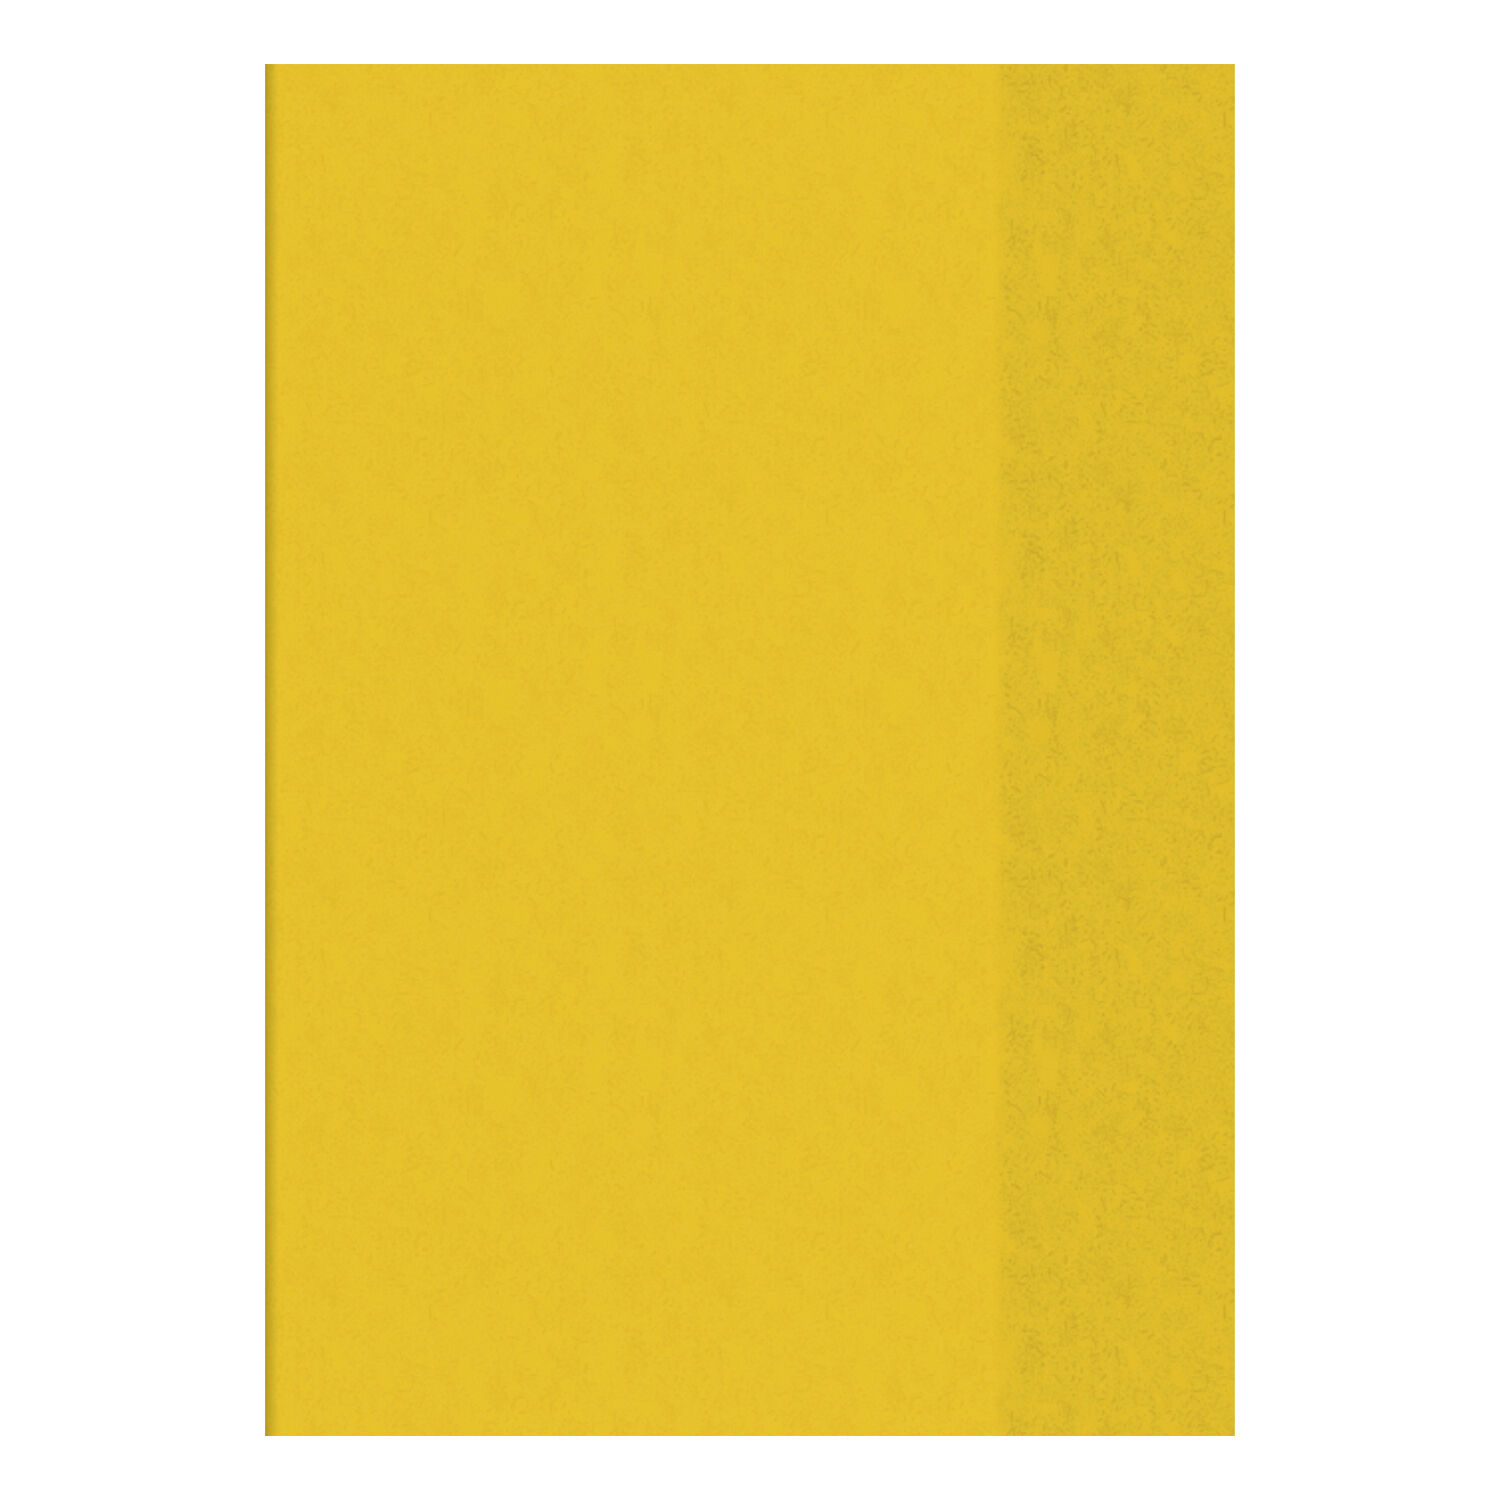 NEU Hefthlle DIN A4, transparent-gelb